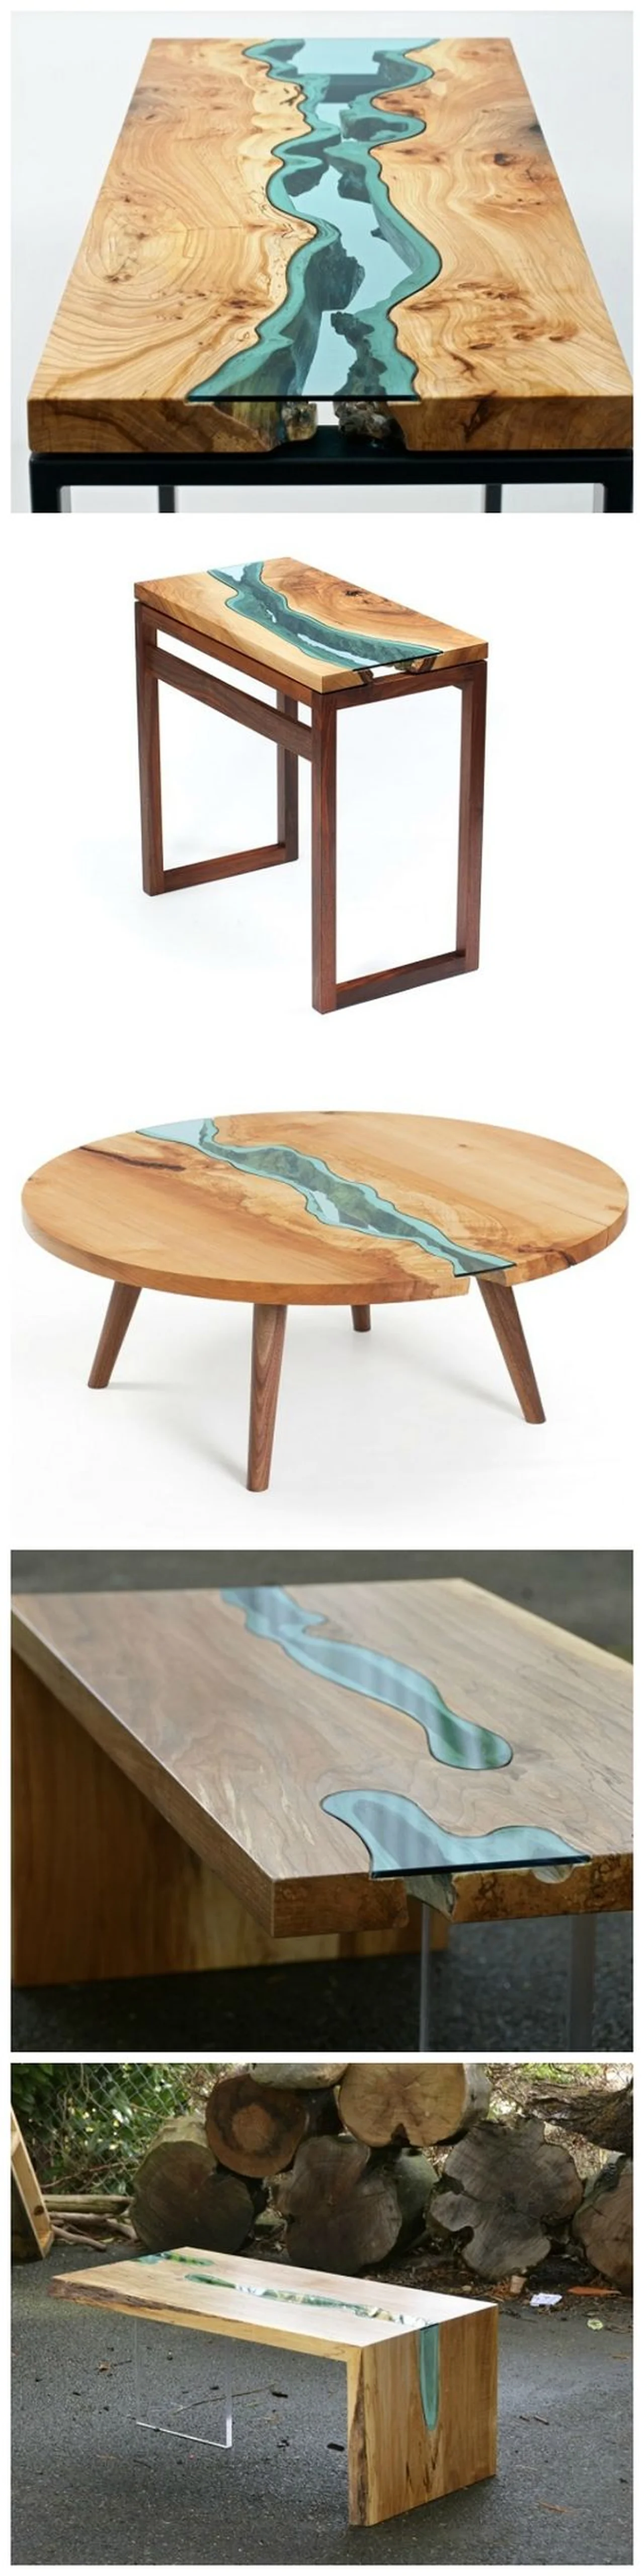 Drewniany stół z elementami szkła